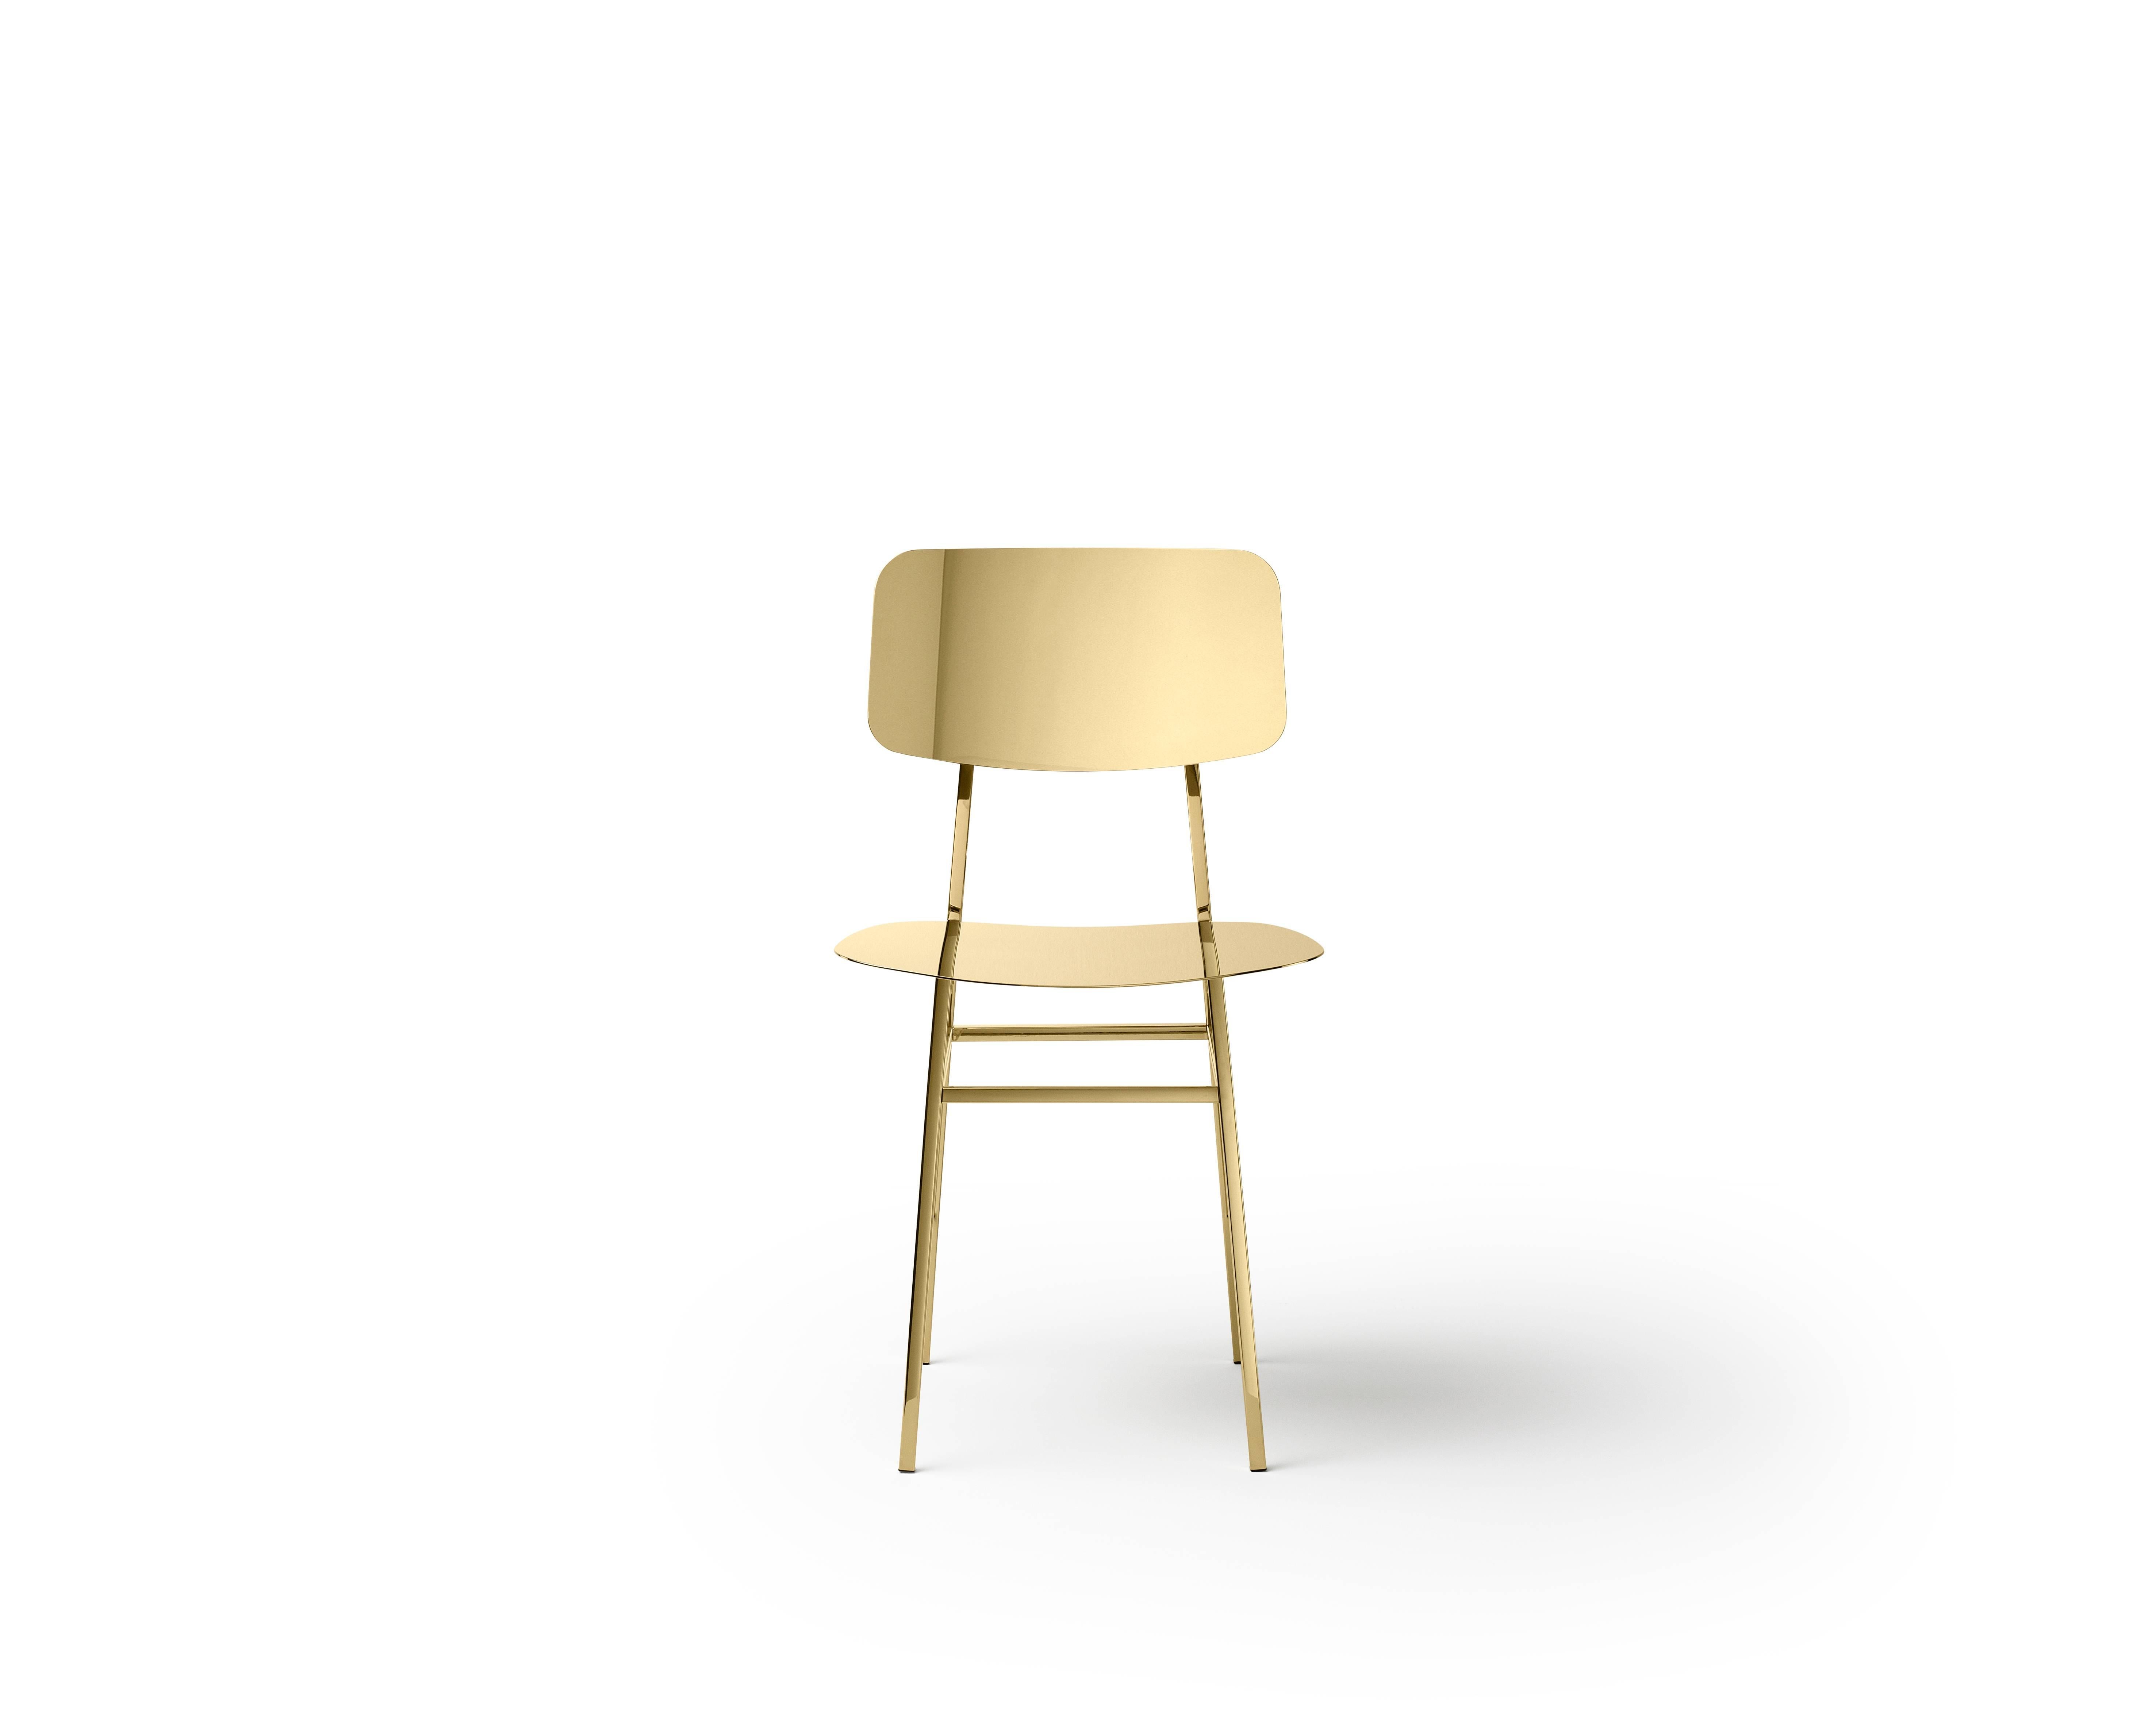 Stuhl aus rostfreiem Stahl in Messing poliert, entworfen von Nika Zupanc.